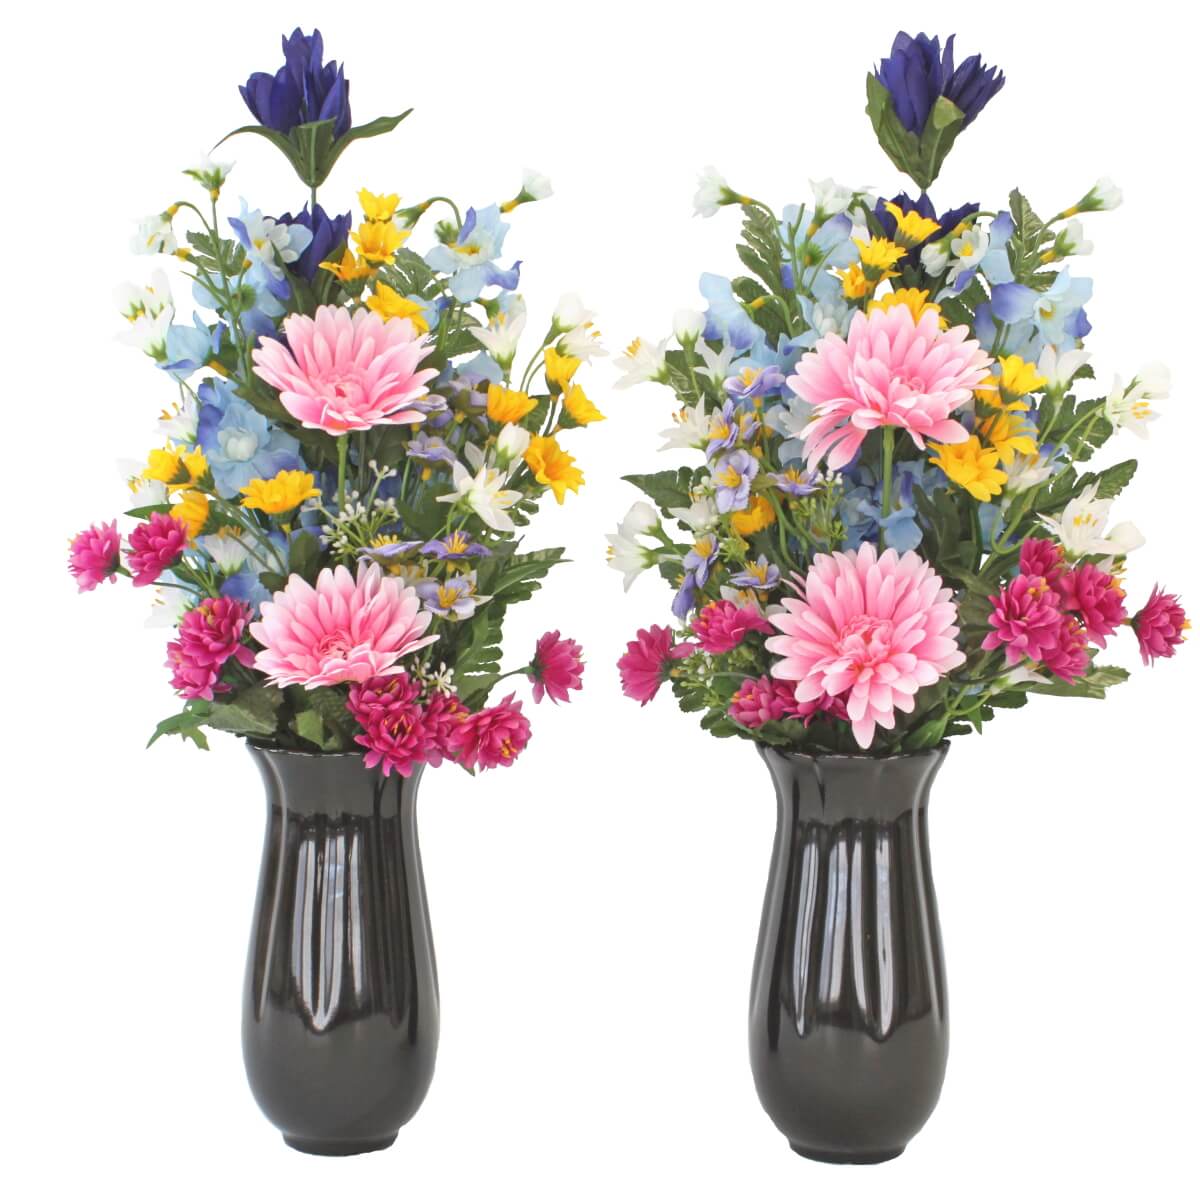 ガーベラとリリーの仏様の花束一対花器付セット